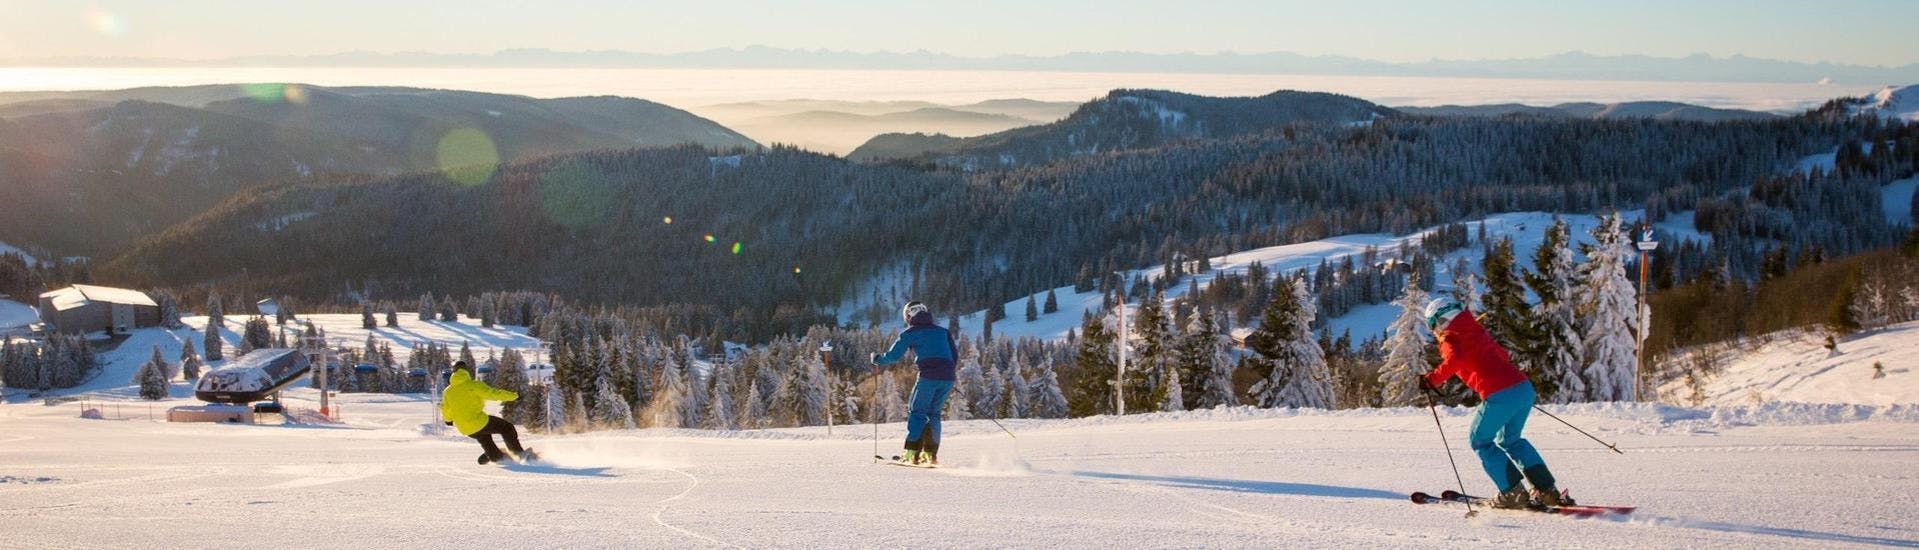 Deux skieurs et un snowboardeur tracent leur chemin dans la neige sur les pistes de Feldberg, où les écoles de ski locales offrent des cours de ski.